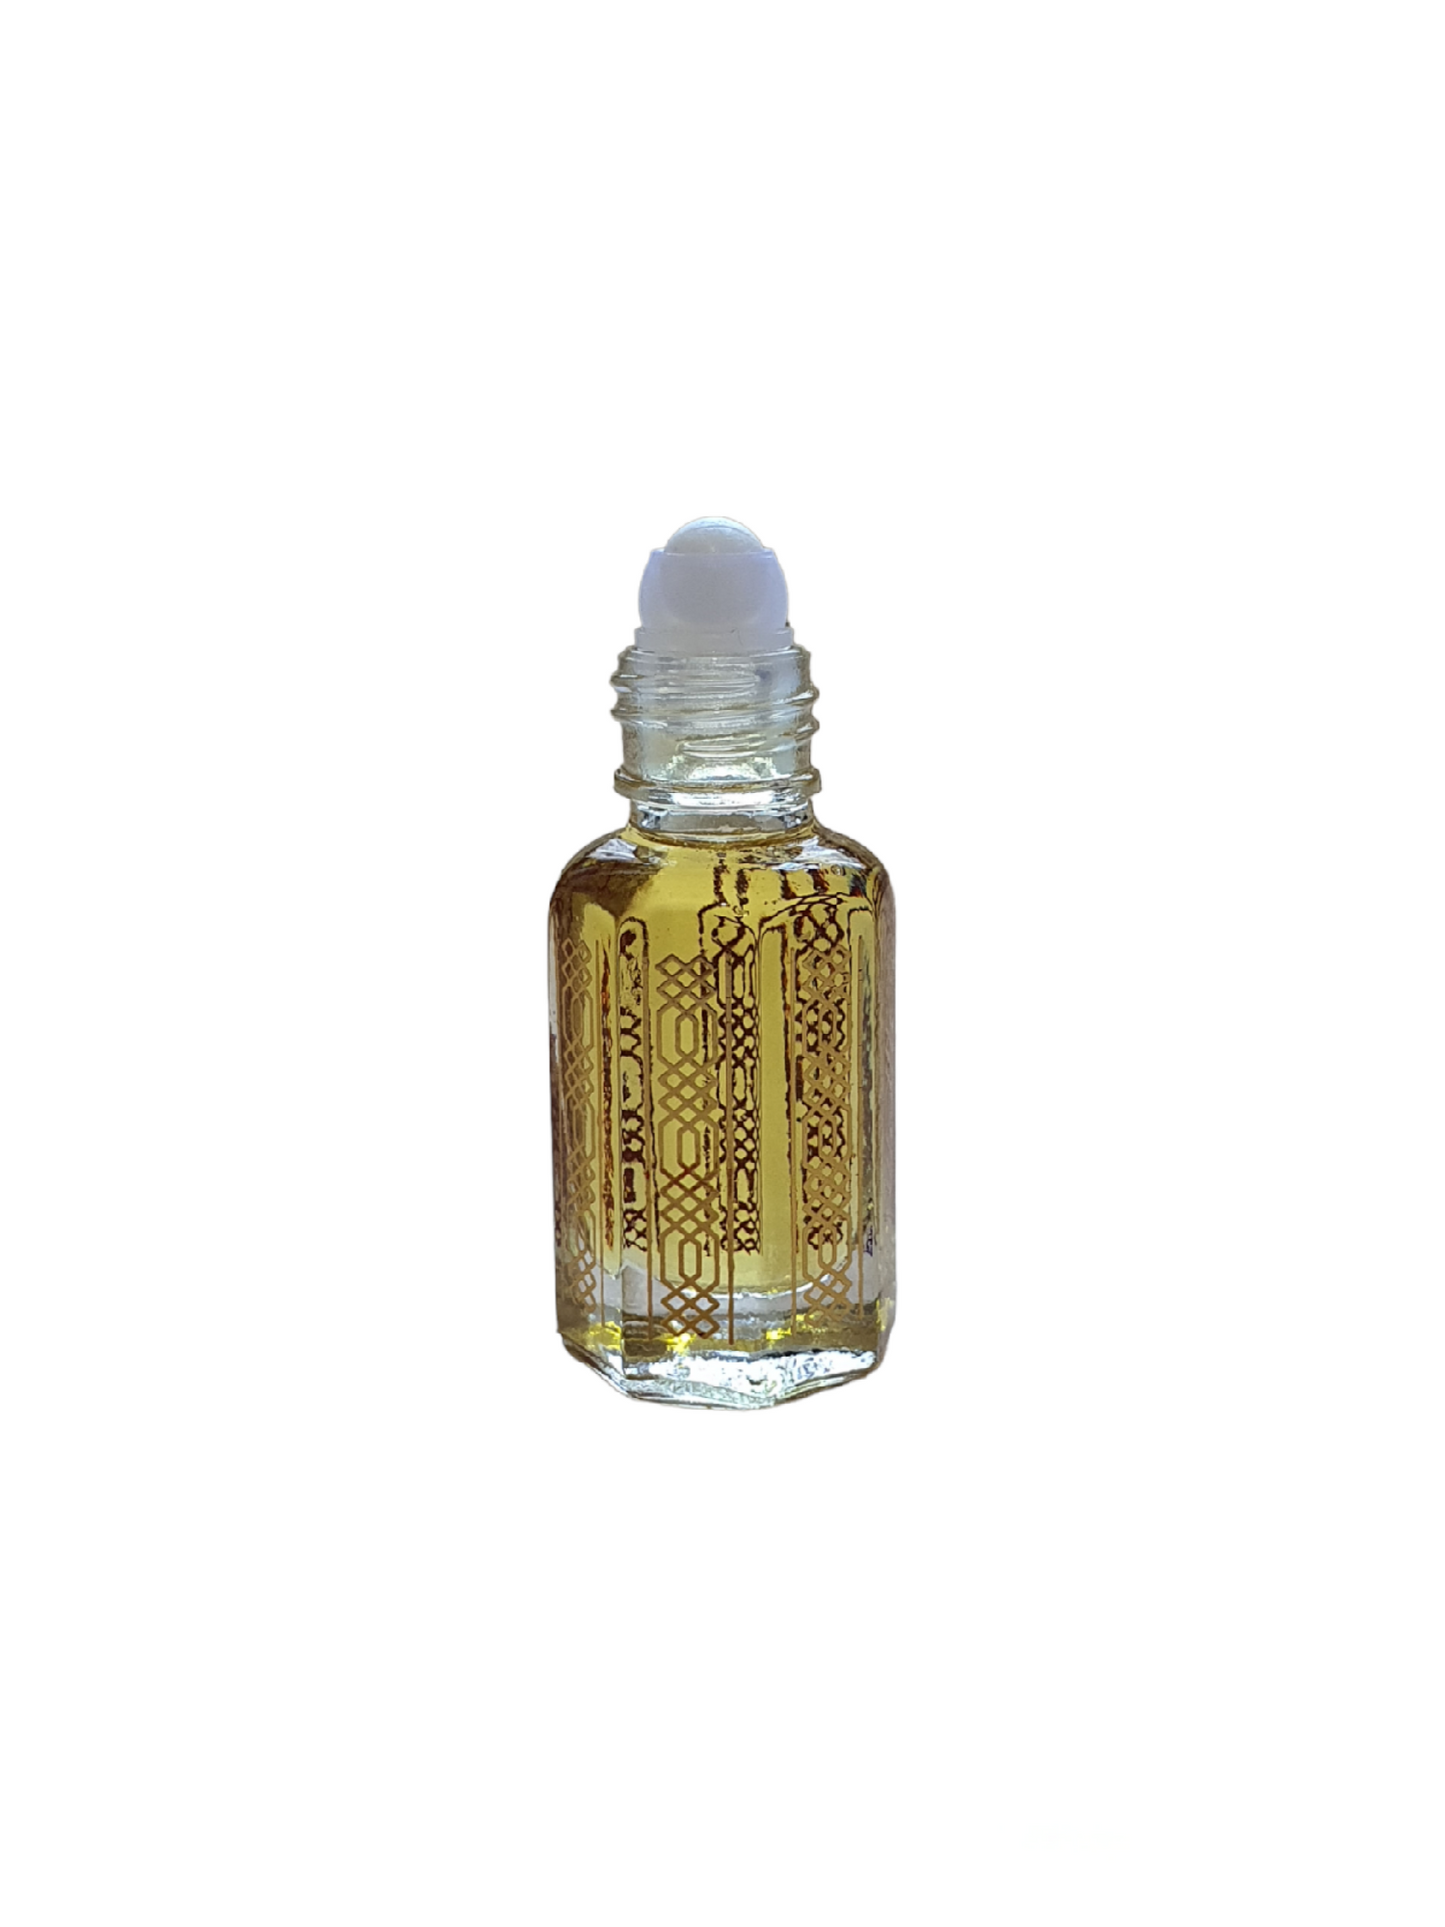 Essential oil Black Oud (Aetoxylon Sympetalum): scent & qualities